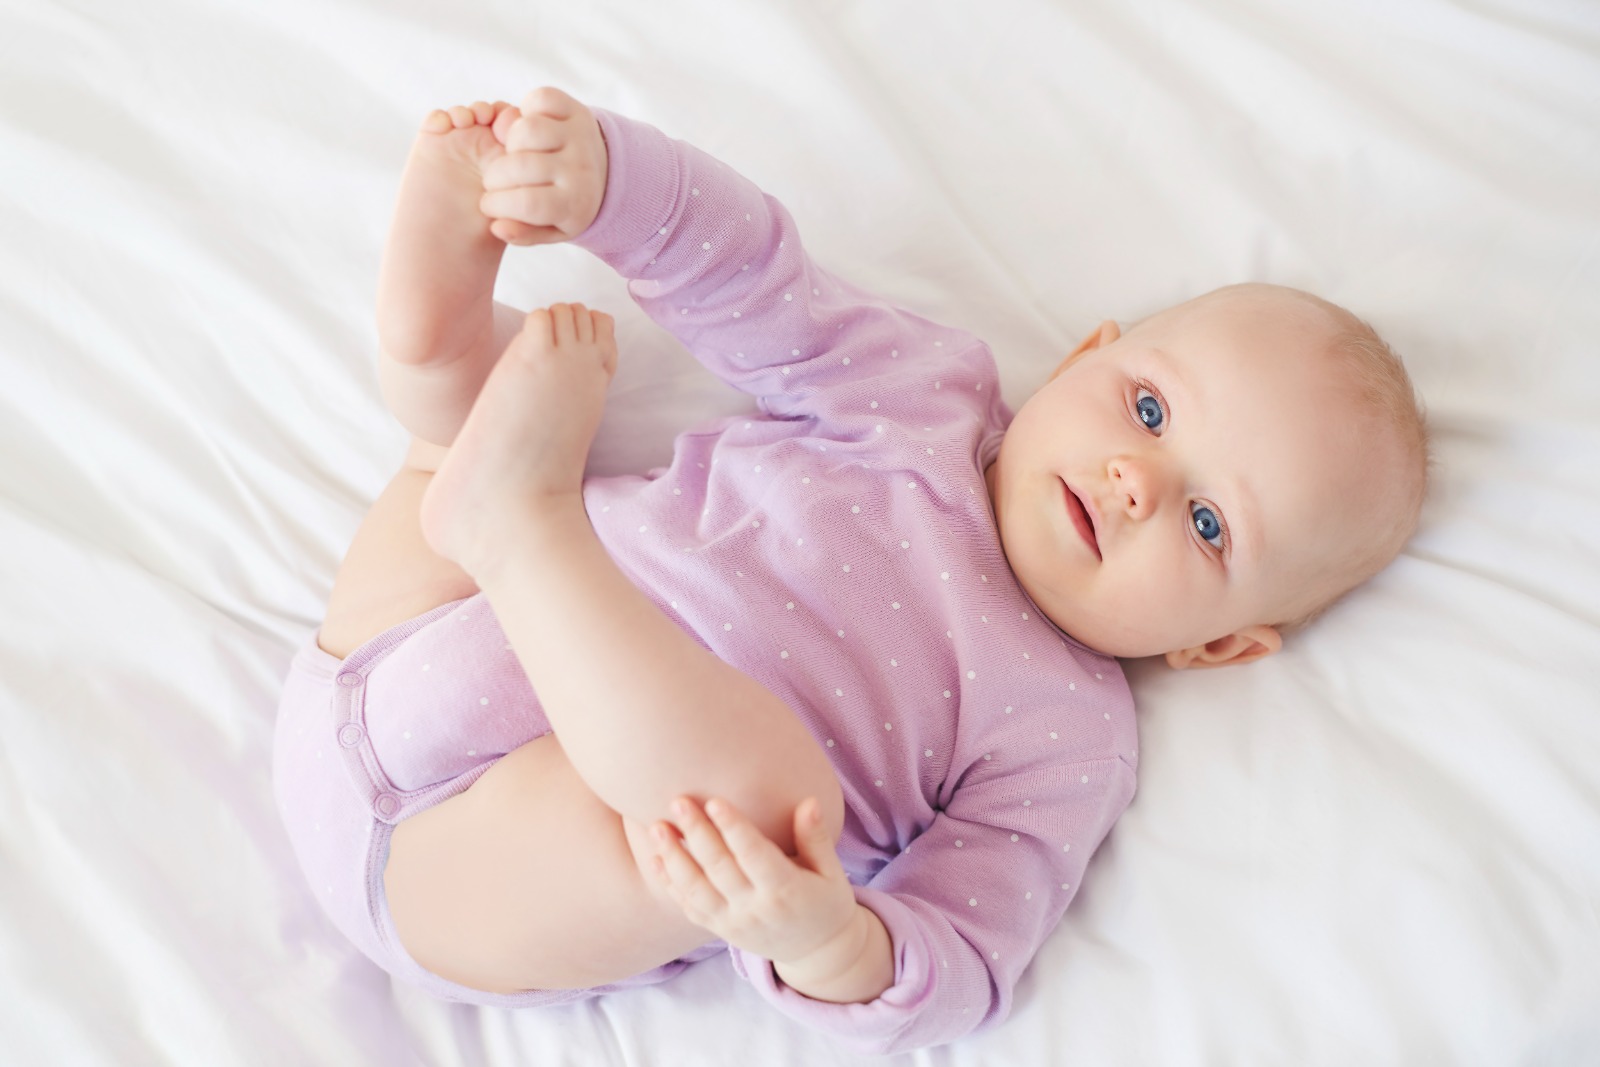 Bebek Sağlığı  İçin Pamuklu Giysi Kullanımı Önemlidir